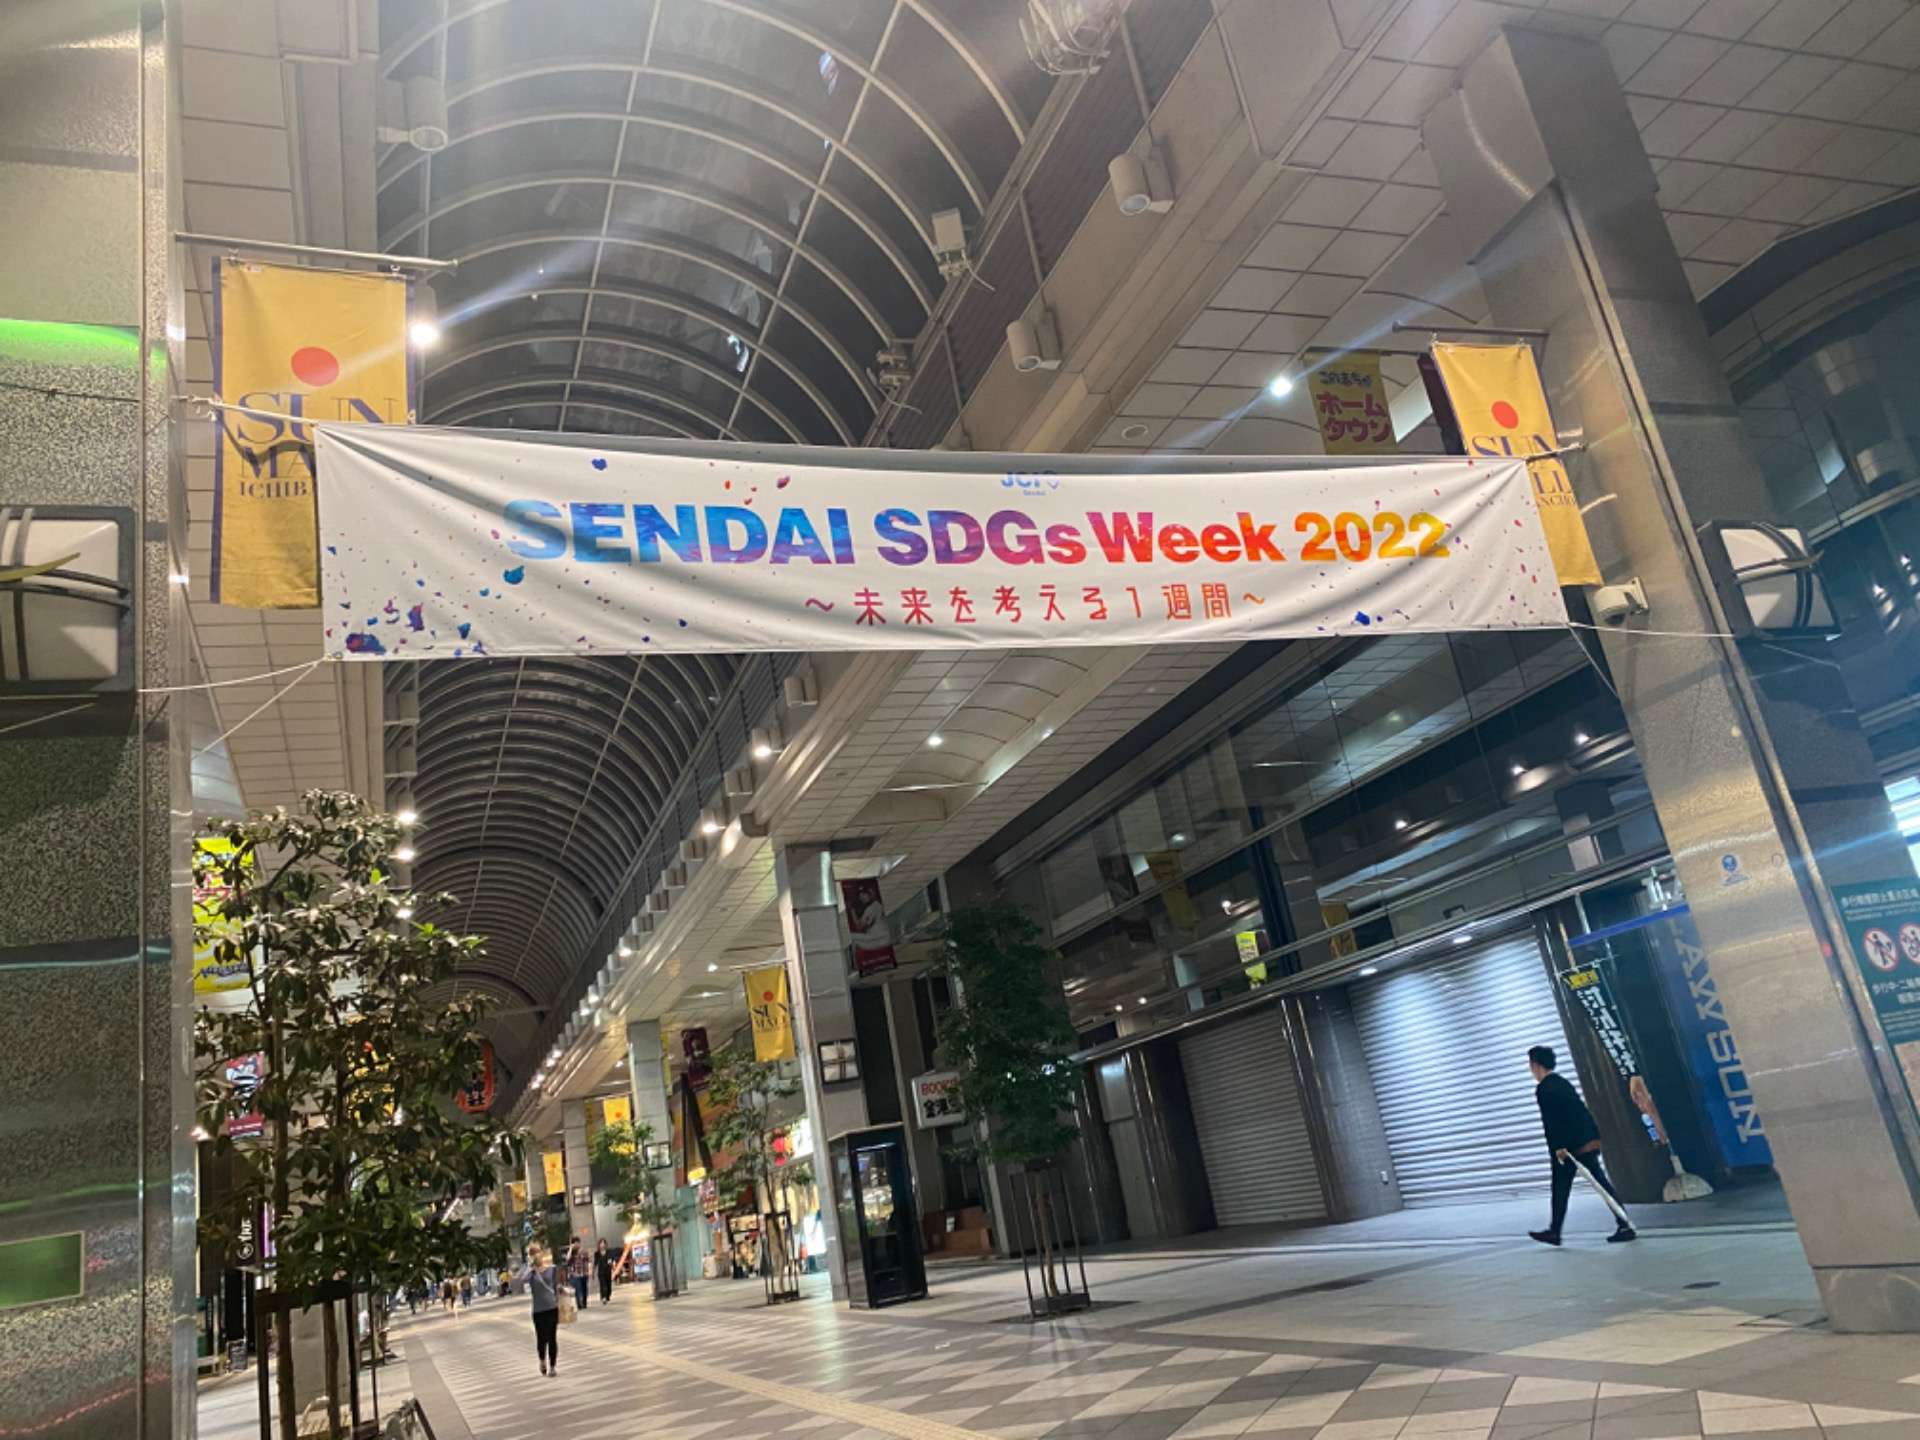 Sendai SDGs Week